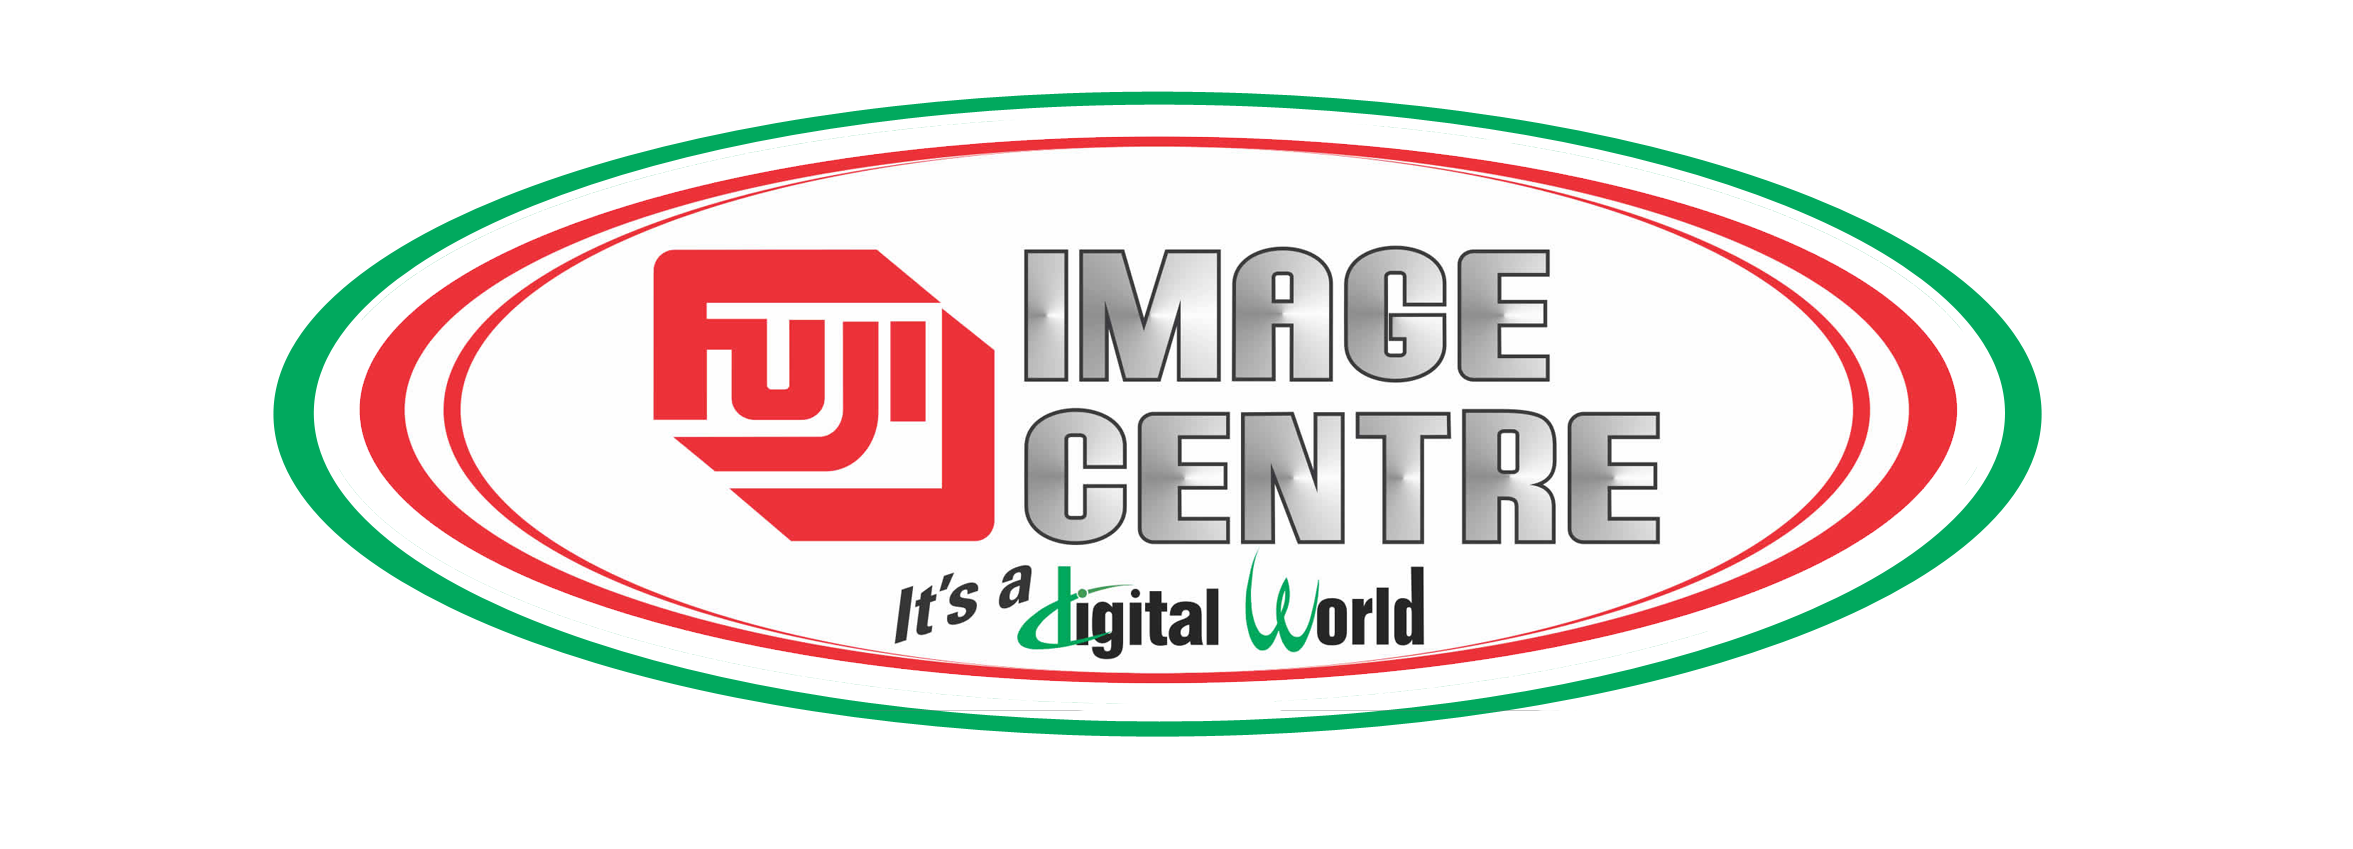 Fuji Image Centre